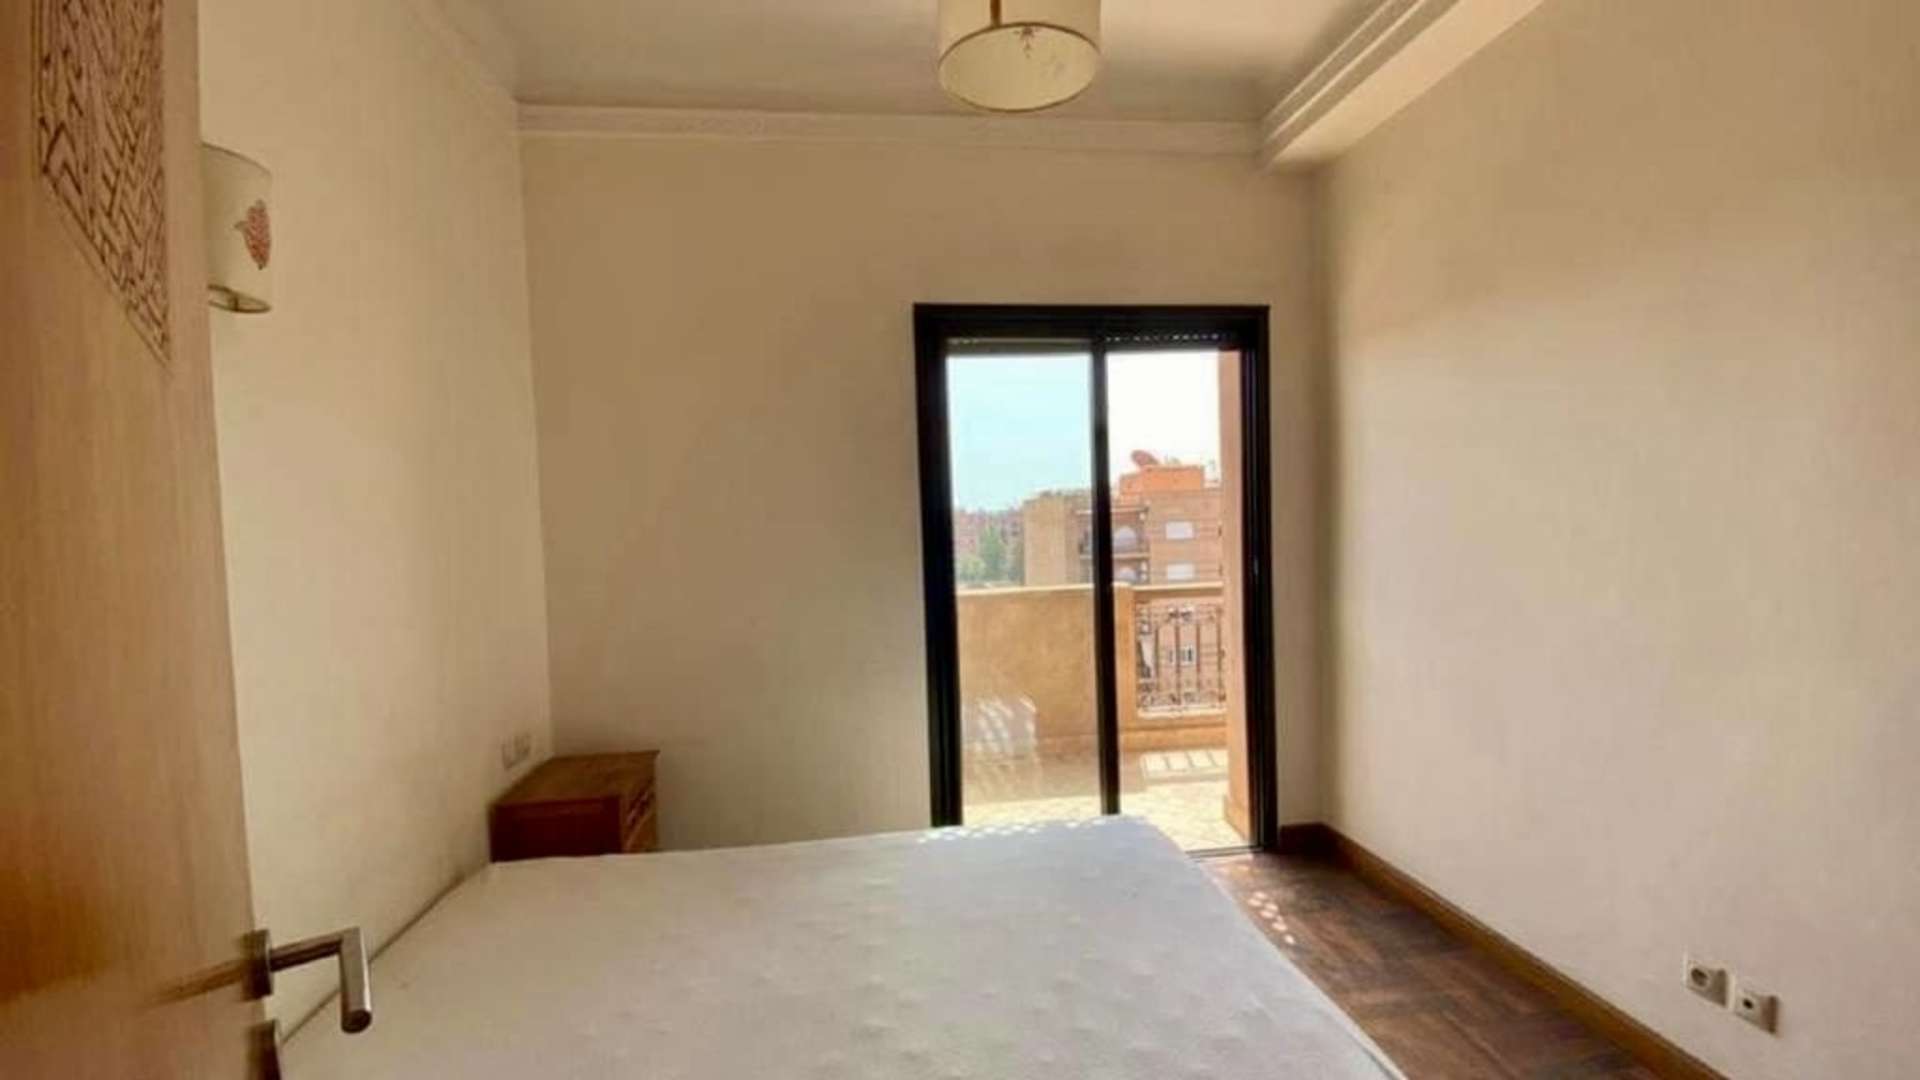 Location longue durée ,Appartement,Appartement à la location longue durée vide avec vue dégagée au dernier étage avec une jolie terrasse,Marrakech,Camp Al Ghoul